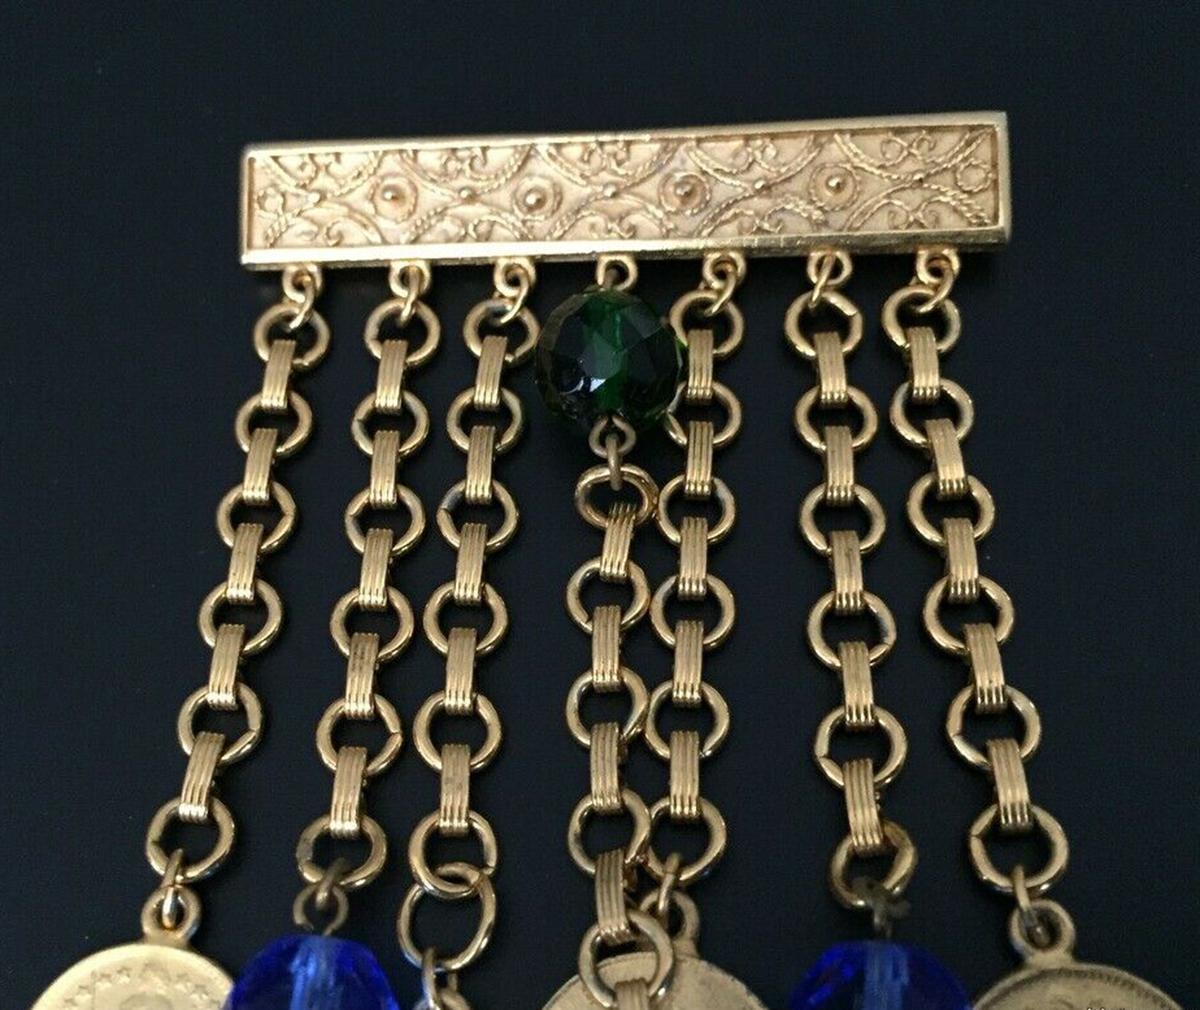 Broche en or signée Ben-AMUN Coin ; barre rectangulaire décorative gaufrée suspendant 7 chaînes à maillons pendants, chacune se terminant par une réplique d'une pièce de monnaie antique. Classique et chic... illuminant votre look d'une beauté